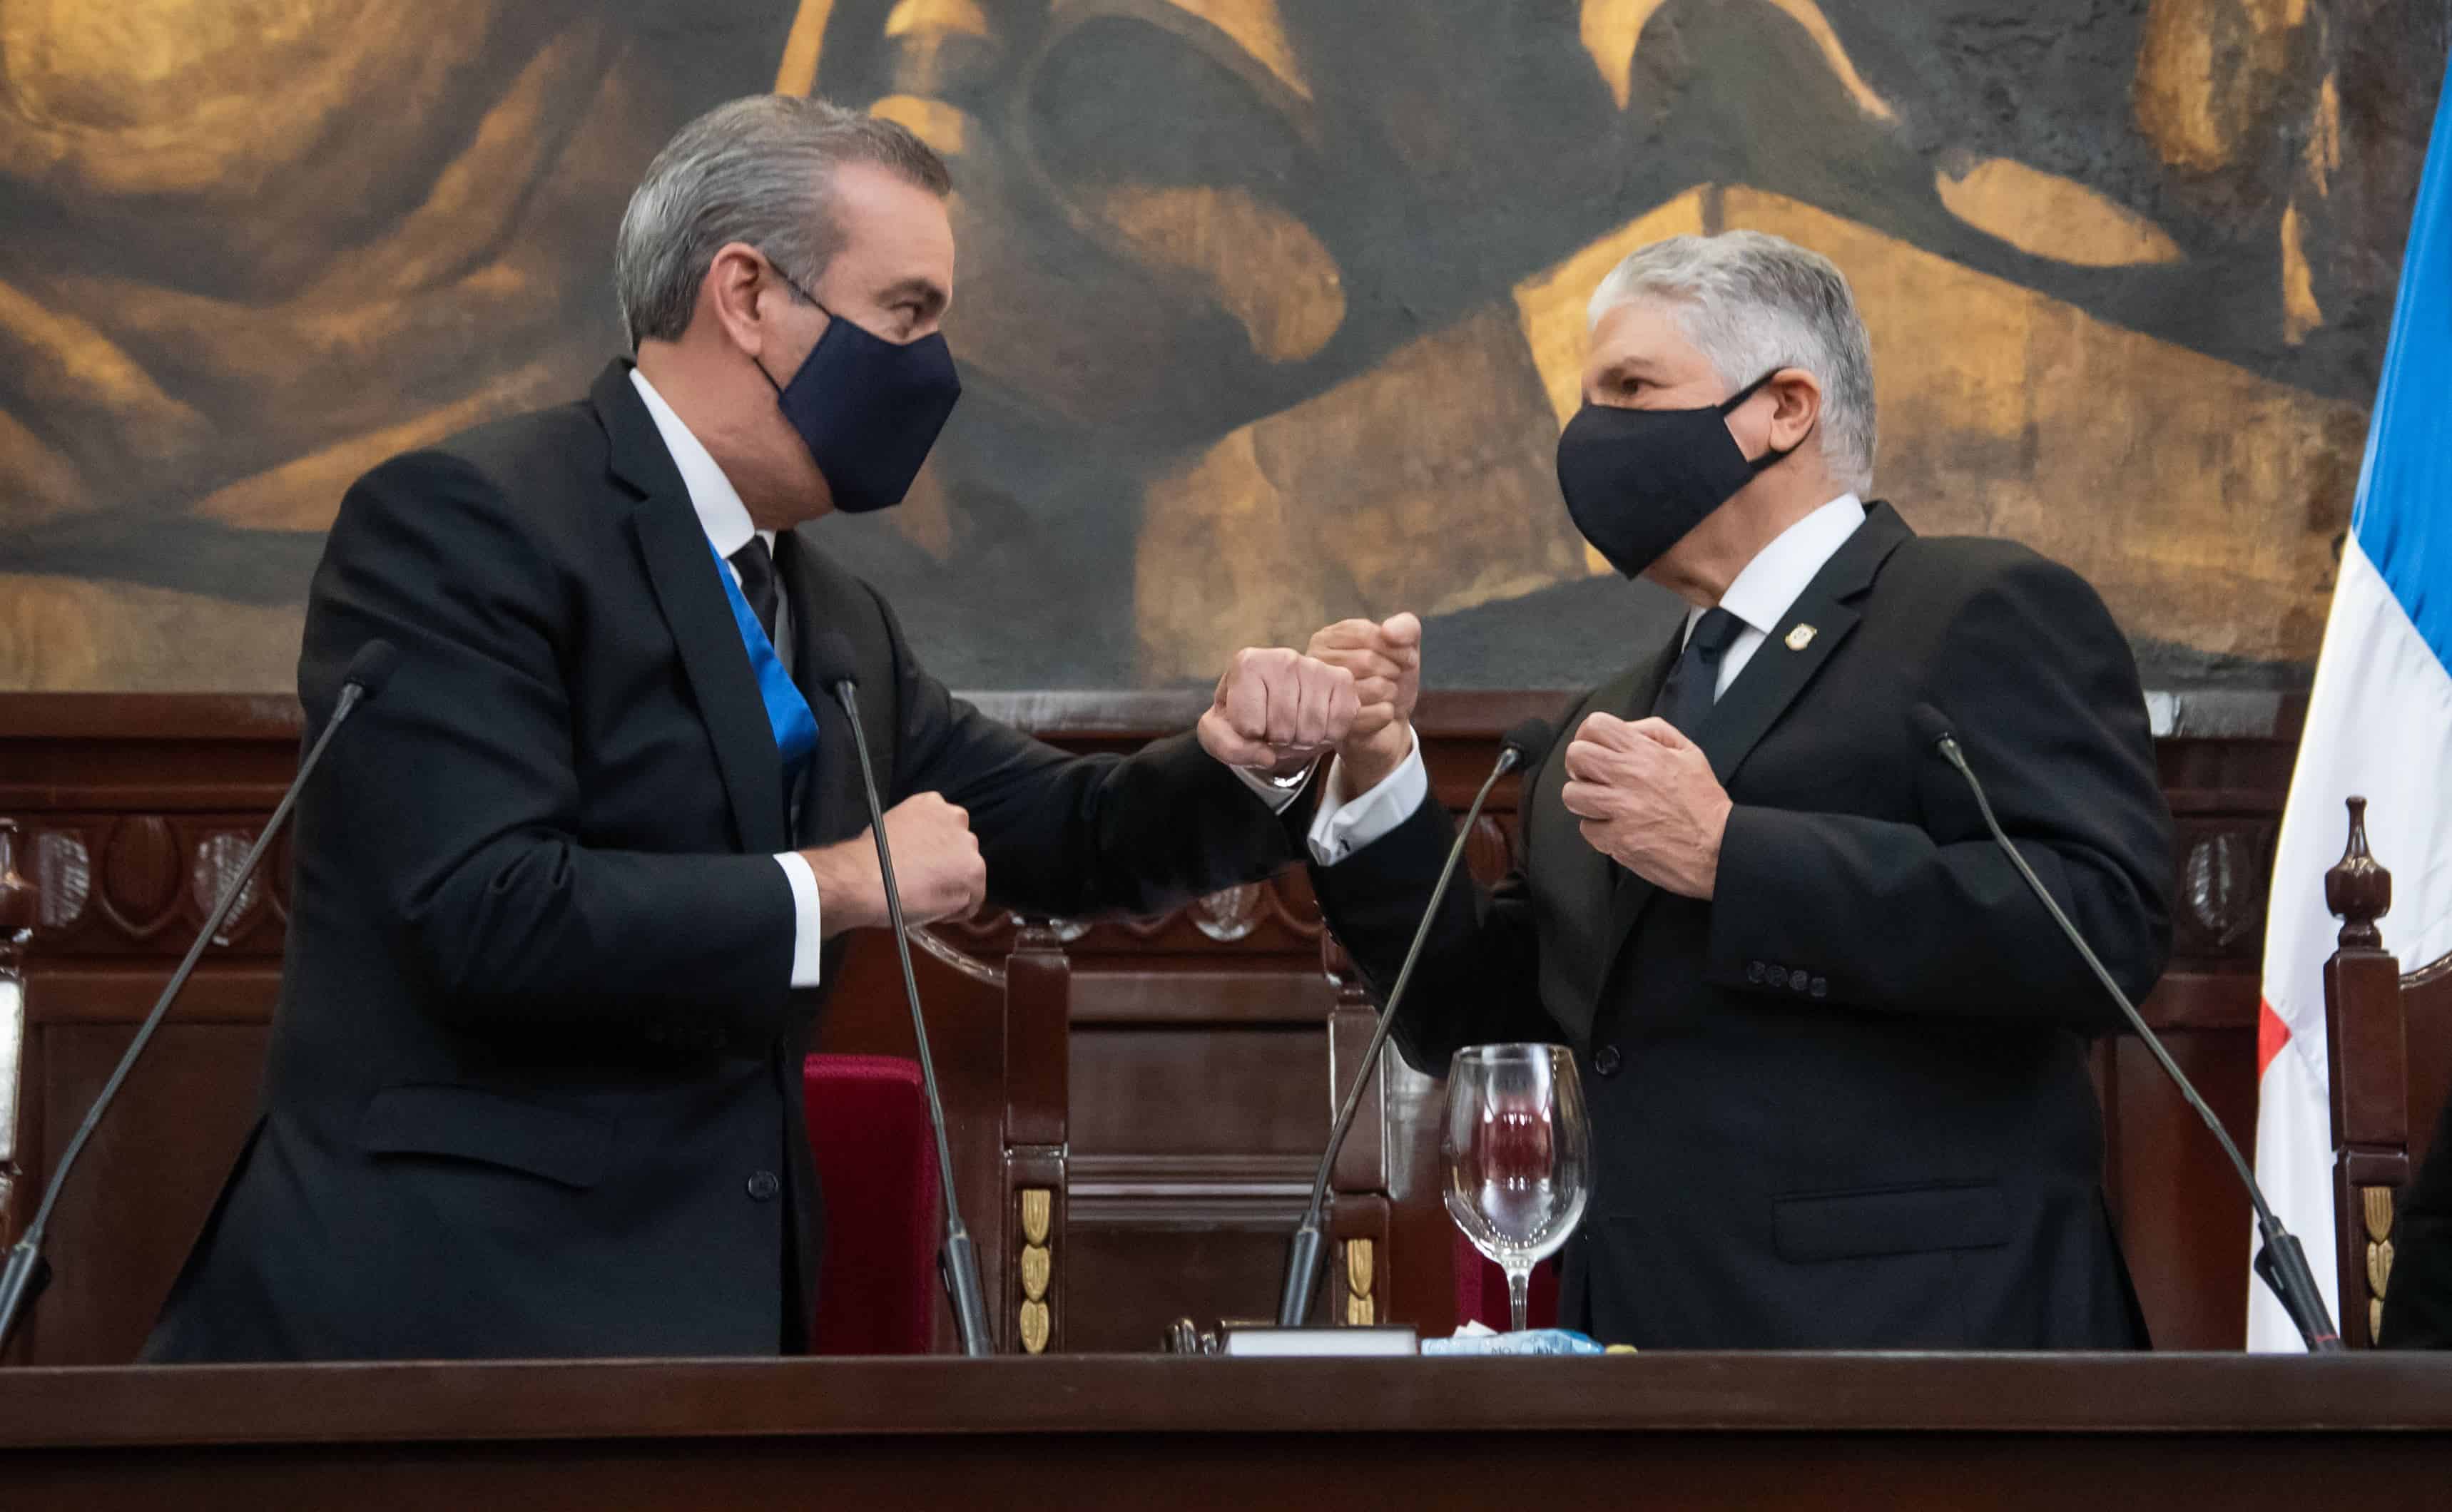 Saludo pandémico. El presidente Luis Abinader es recibido por el presidente del Senado, Eduardo Estrella, con el saludo que se estandarizó durante la pandemia del covid-19.